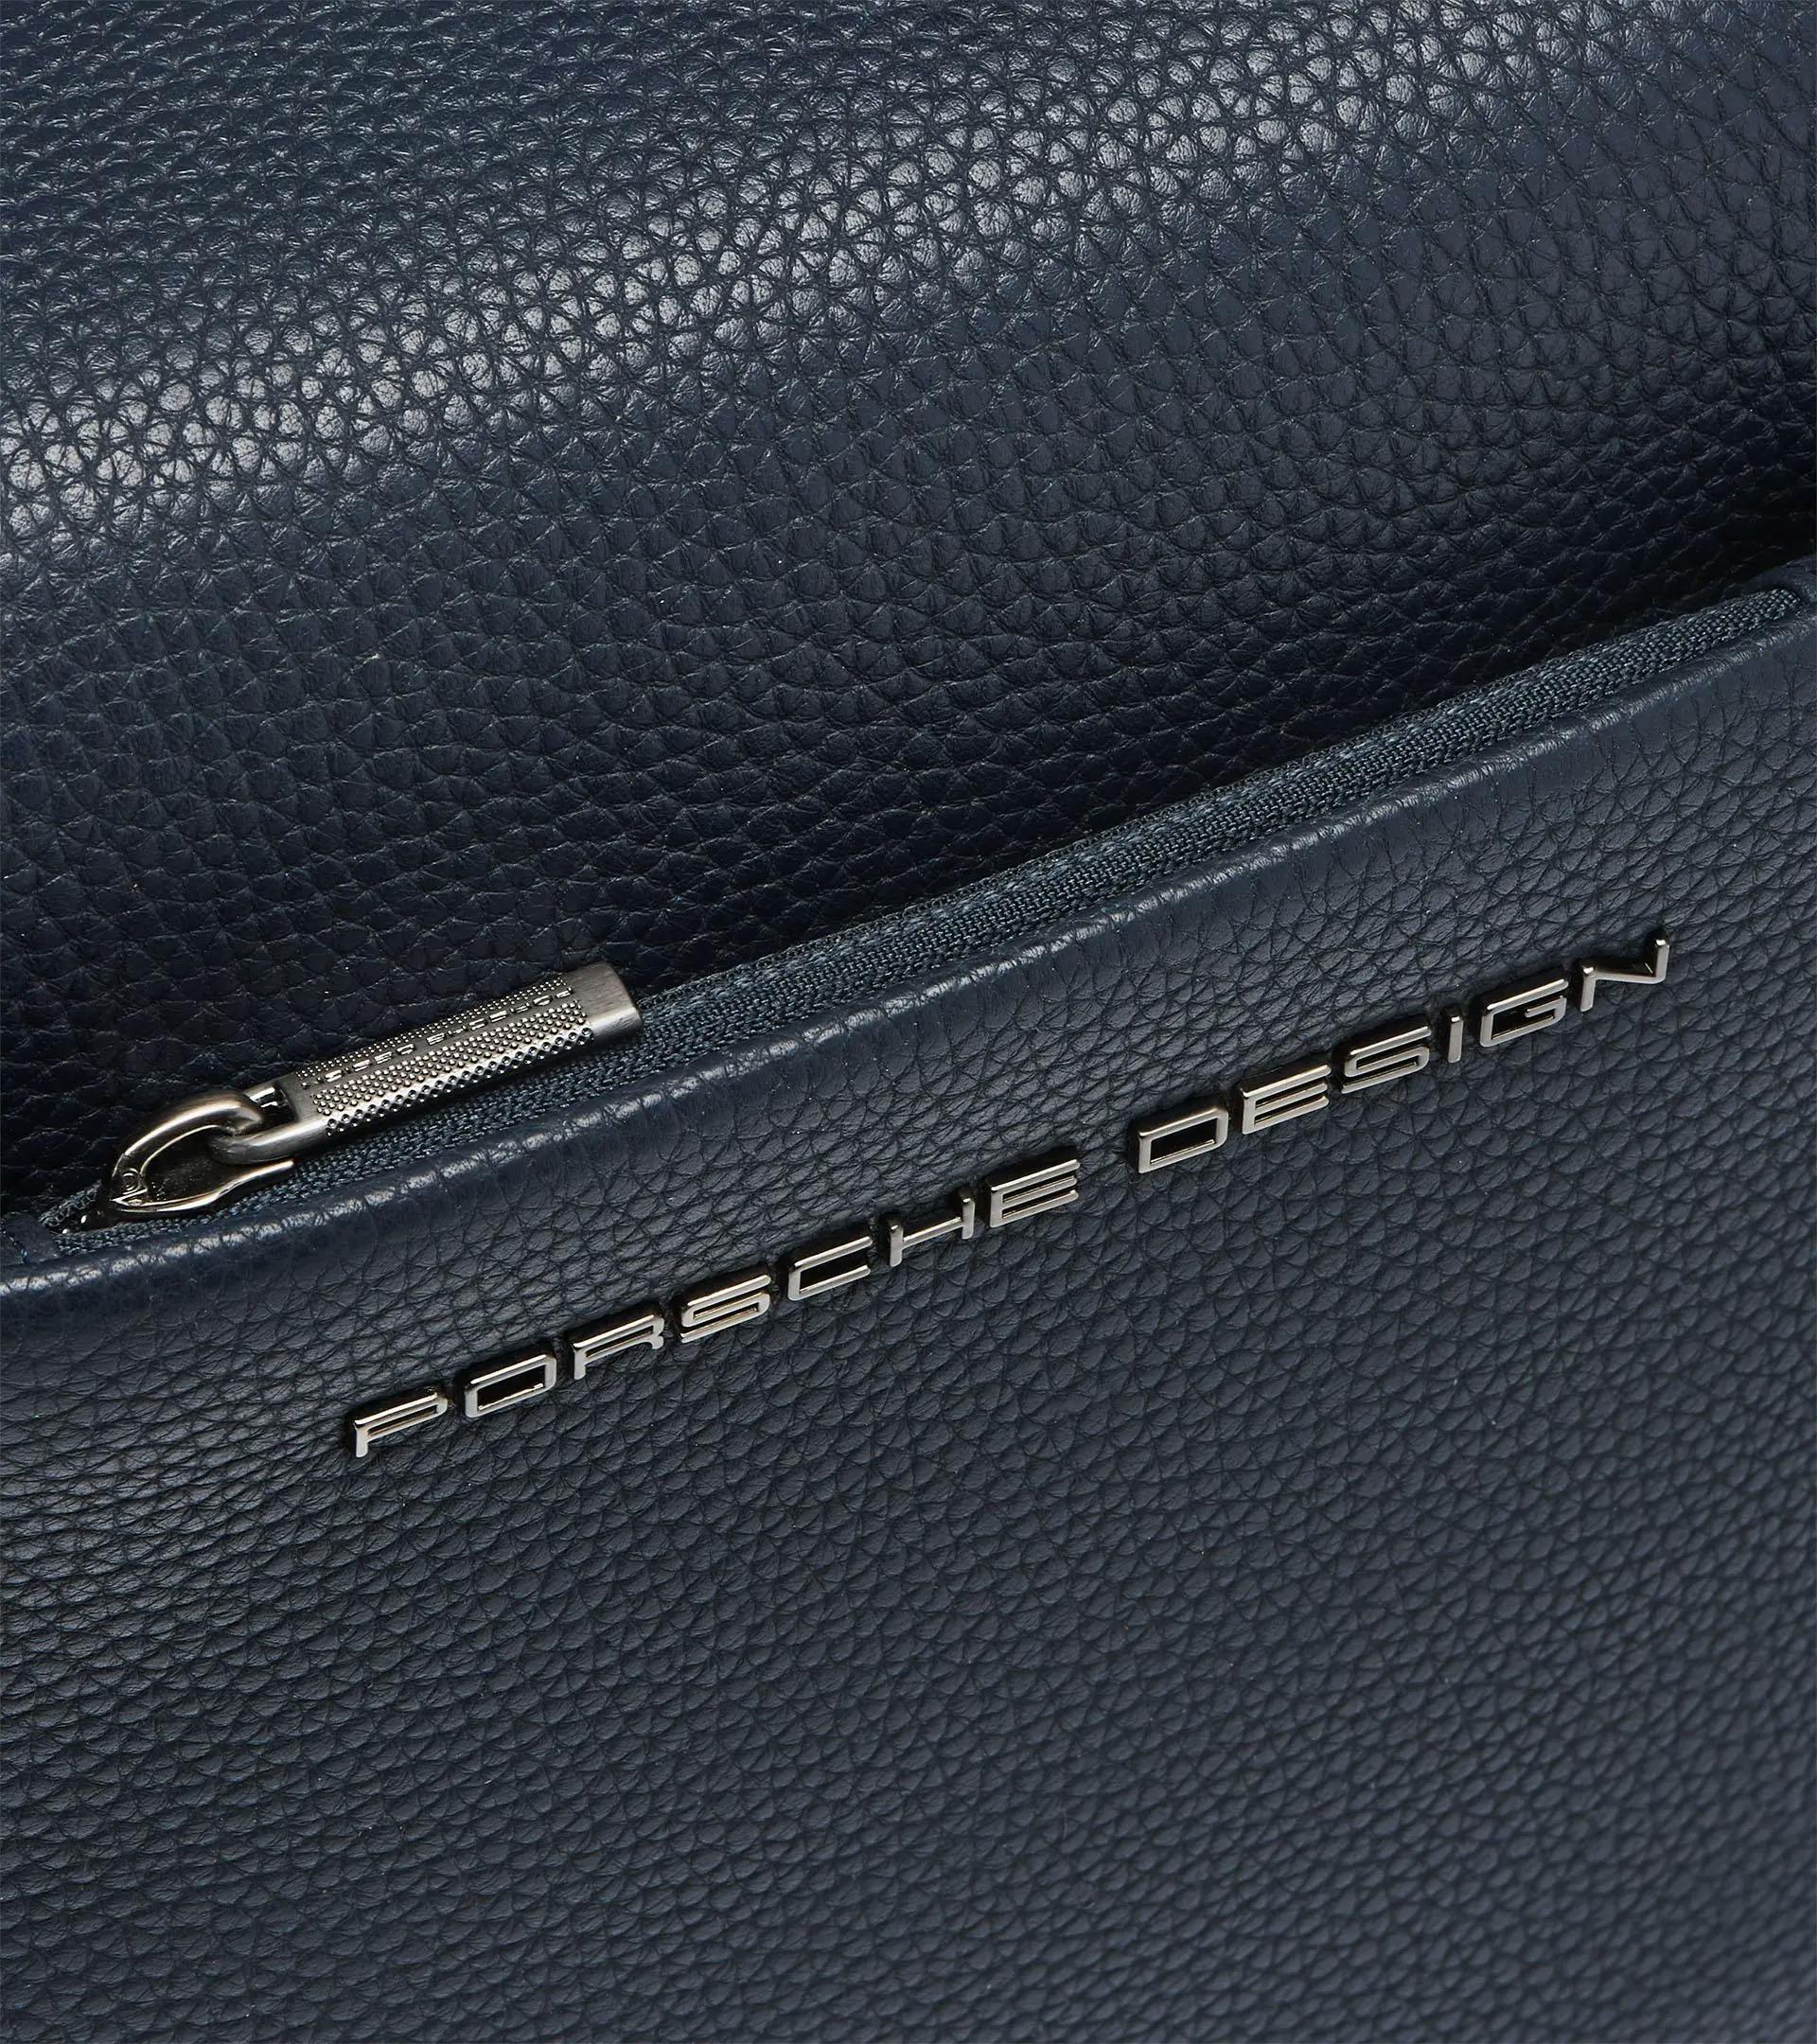 Porsche Design Cervo 2.0 MV Shoulder Bag at FORZIERI